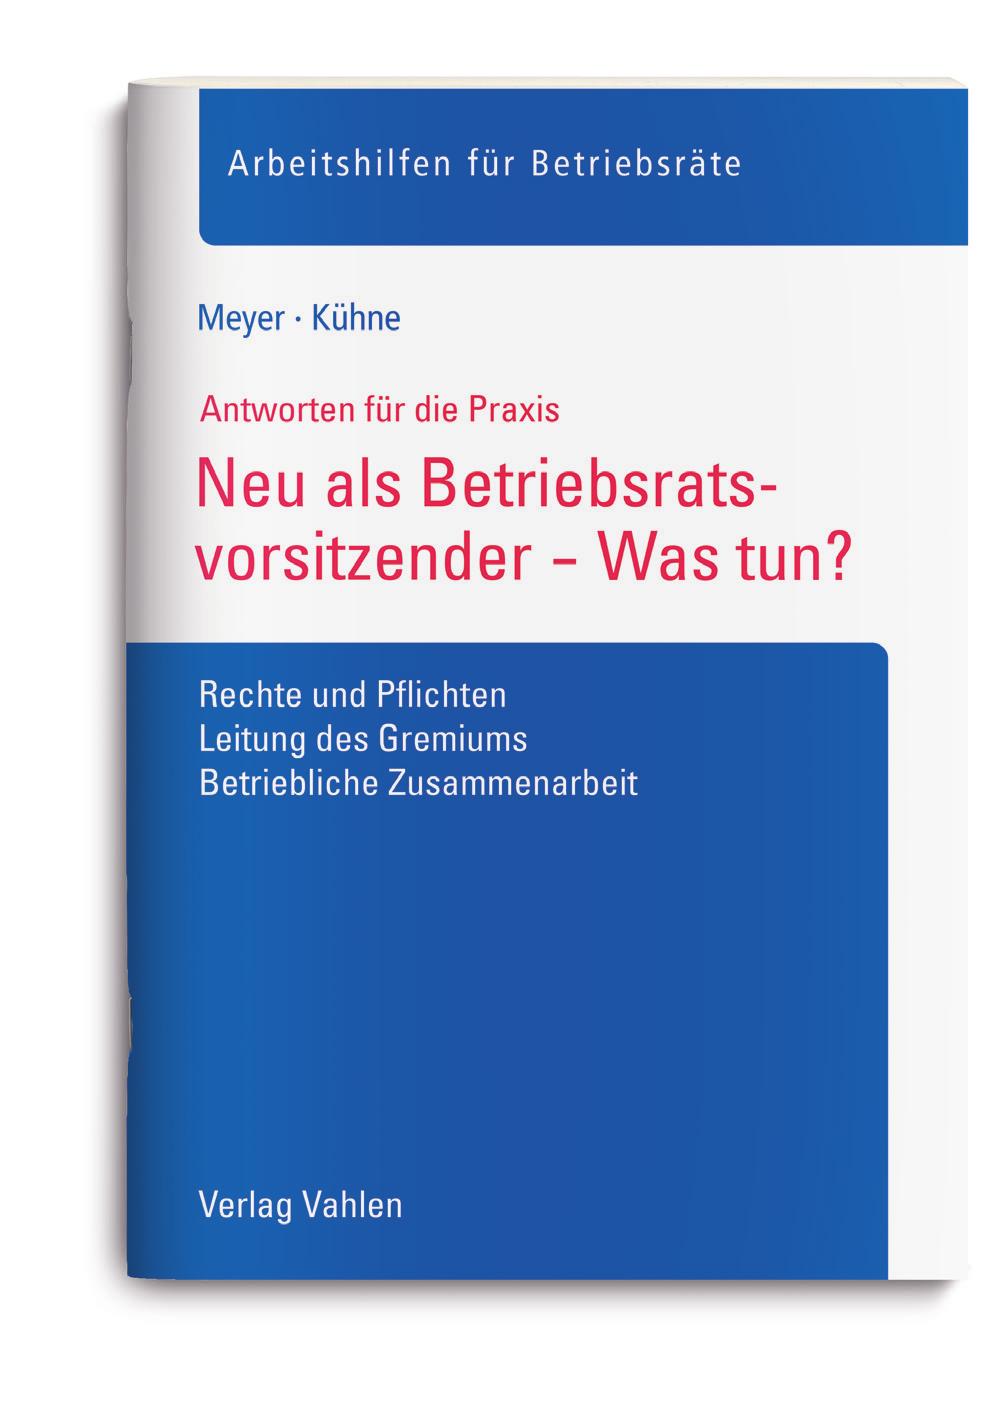 Gefällt Ihnen, was Sie gelesen haben? Meer/Kühne Neu im Betriebsrat Was tun? 2014. 32 Seiten.